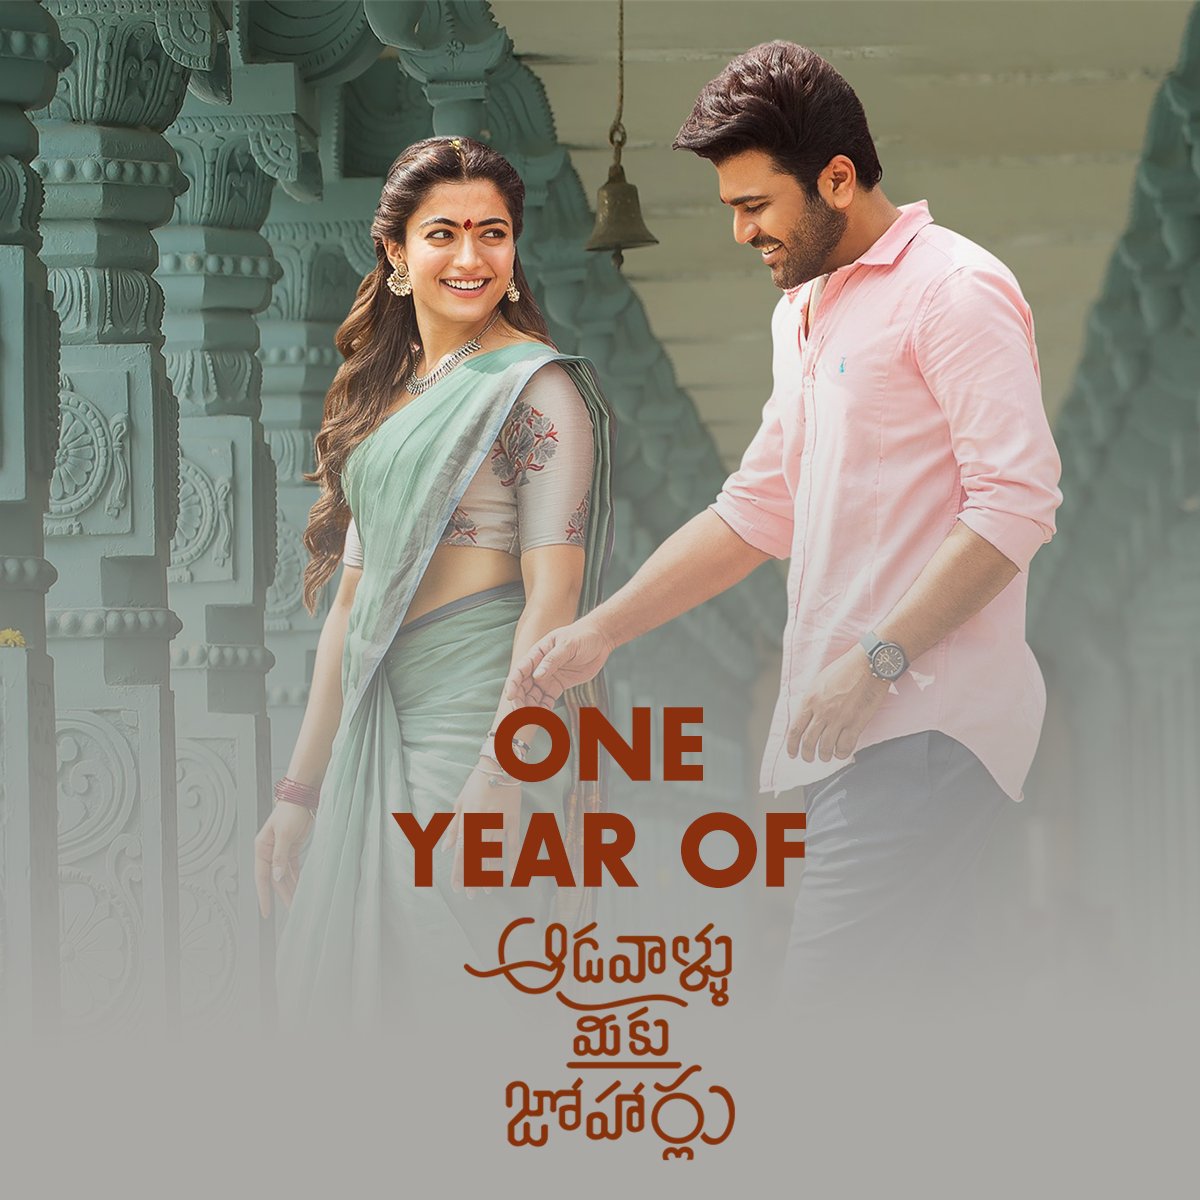 Omg! it's 1 year already one year of beautiful gorgeous stunning #Aadhya - one year of #AadavalluMeekuJohaarlu ♥️

@iamRashmika @ImSharwanand @SLVCinemasOffl 

#1YearOfAadavalluMeekuJohaarlu #RashmikaMandanna